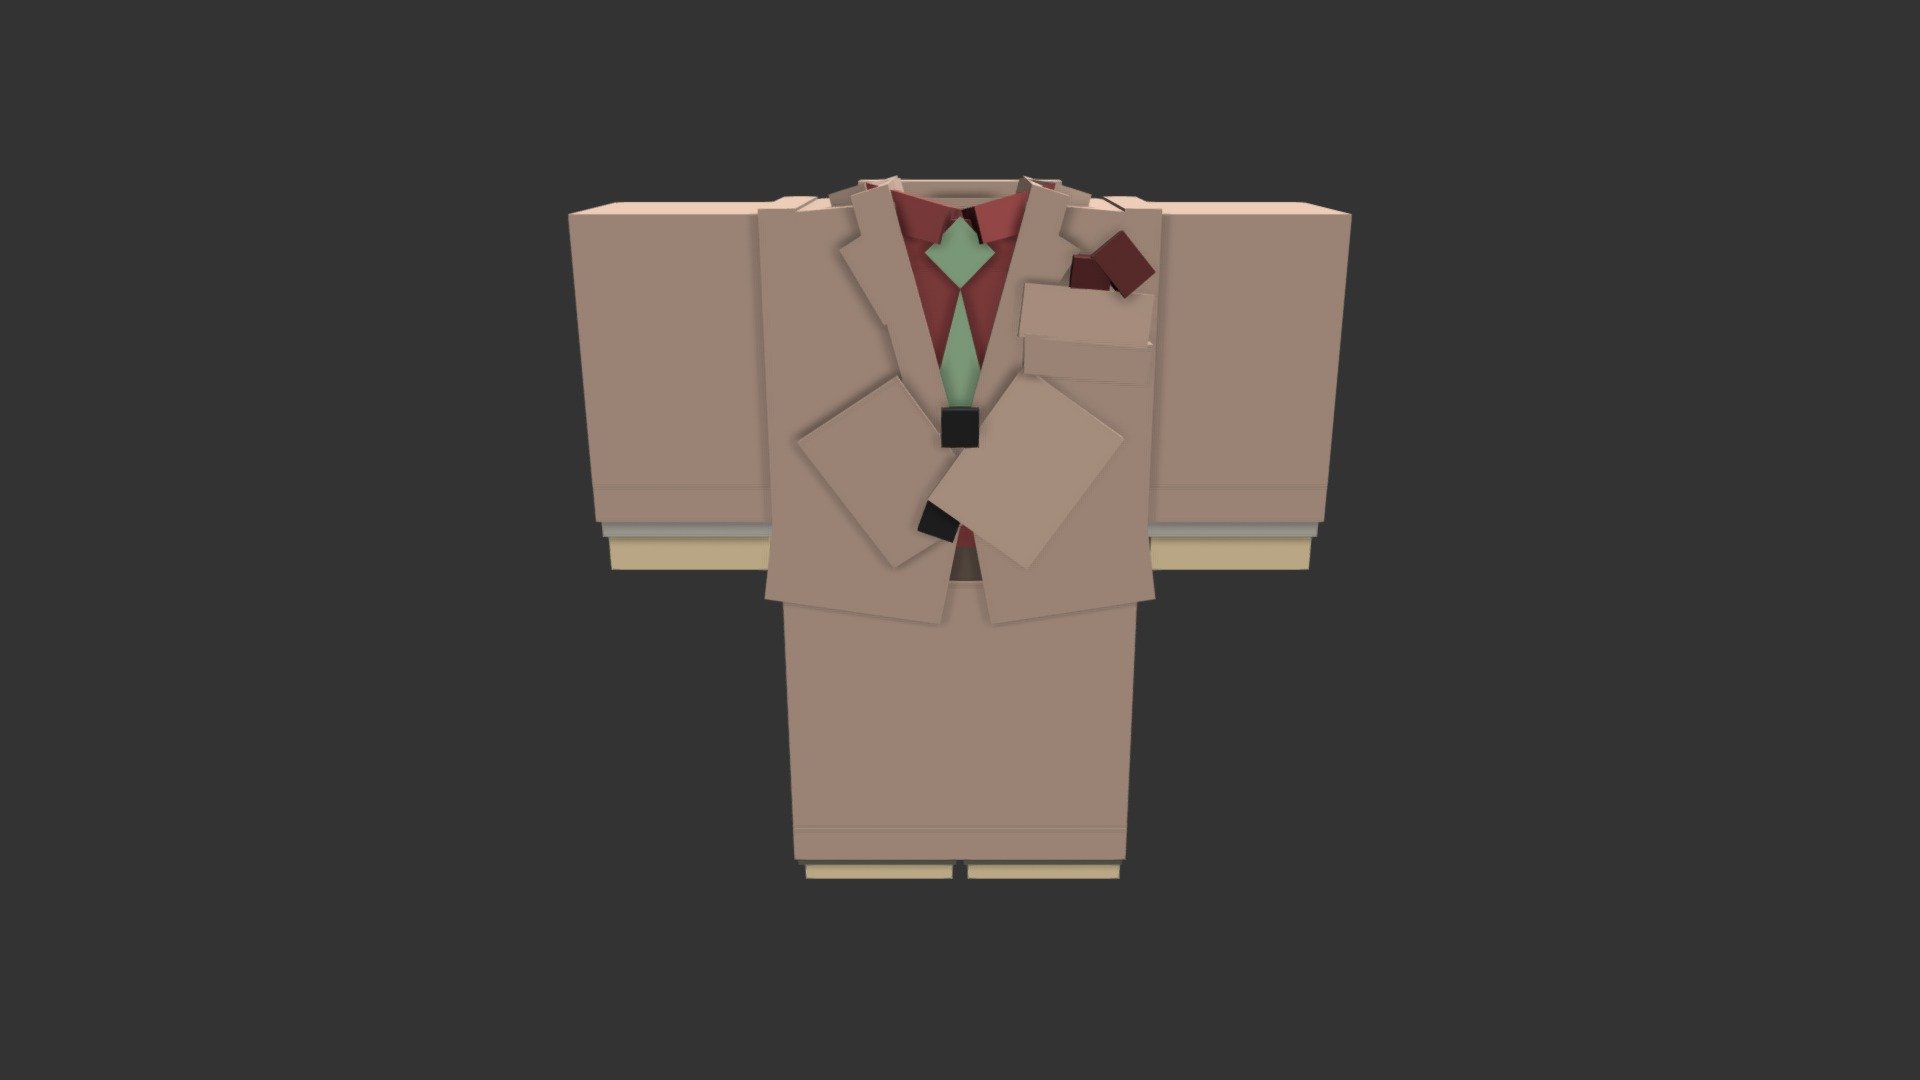 Khaki Suit - Download Free 3D model by fantasticfrontier [44c0231 ...